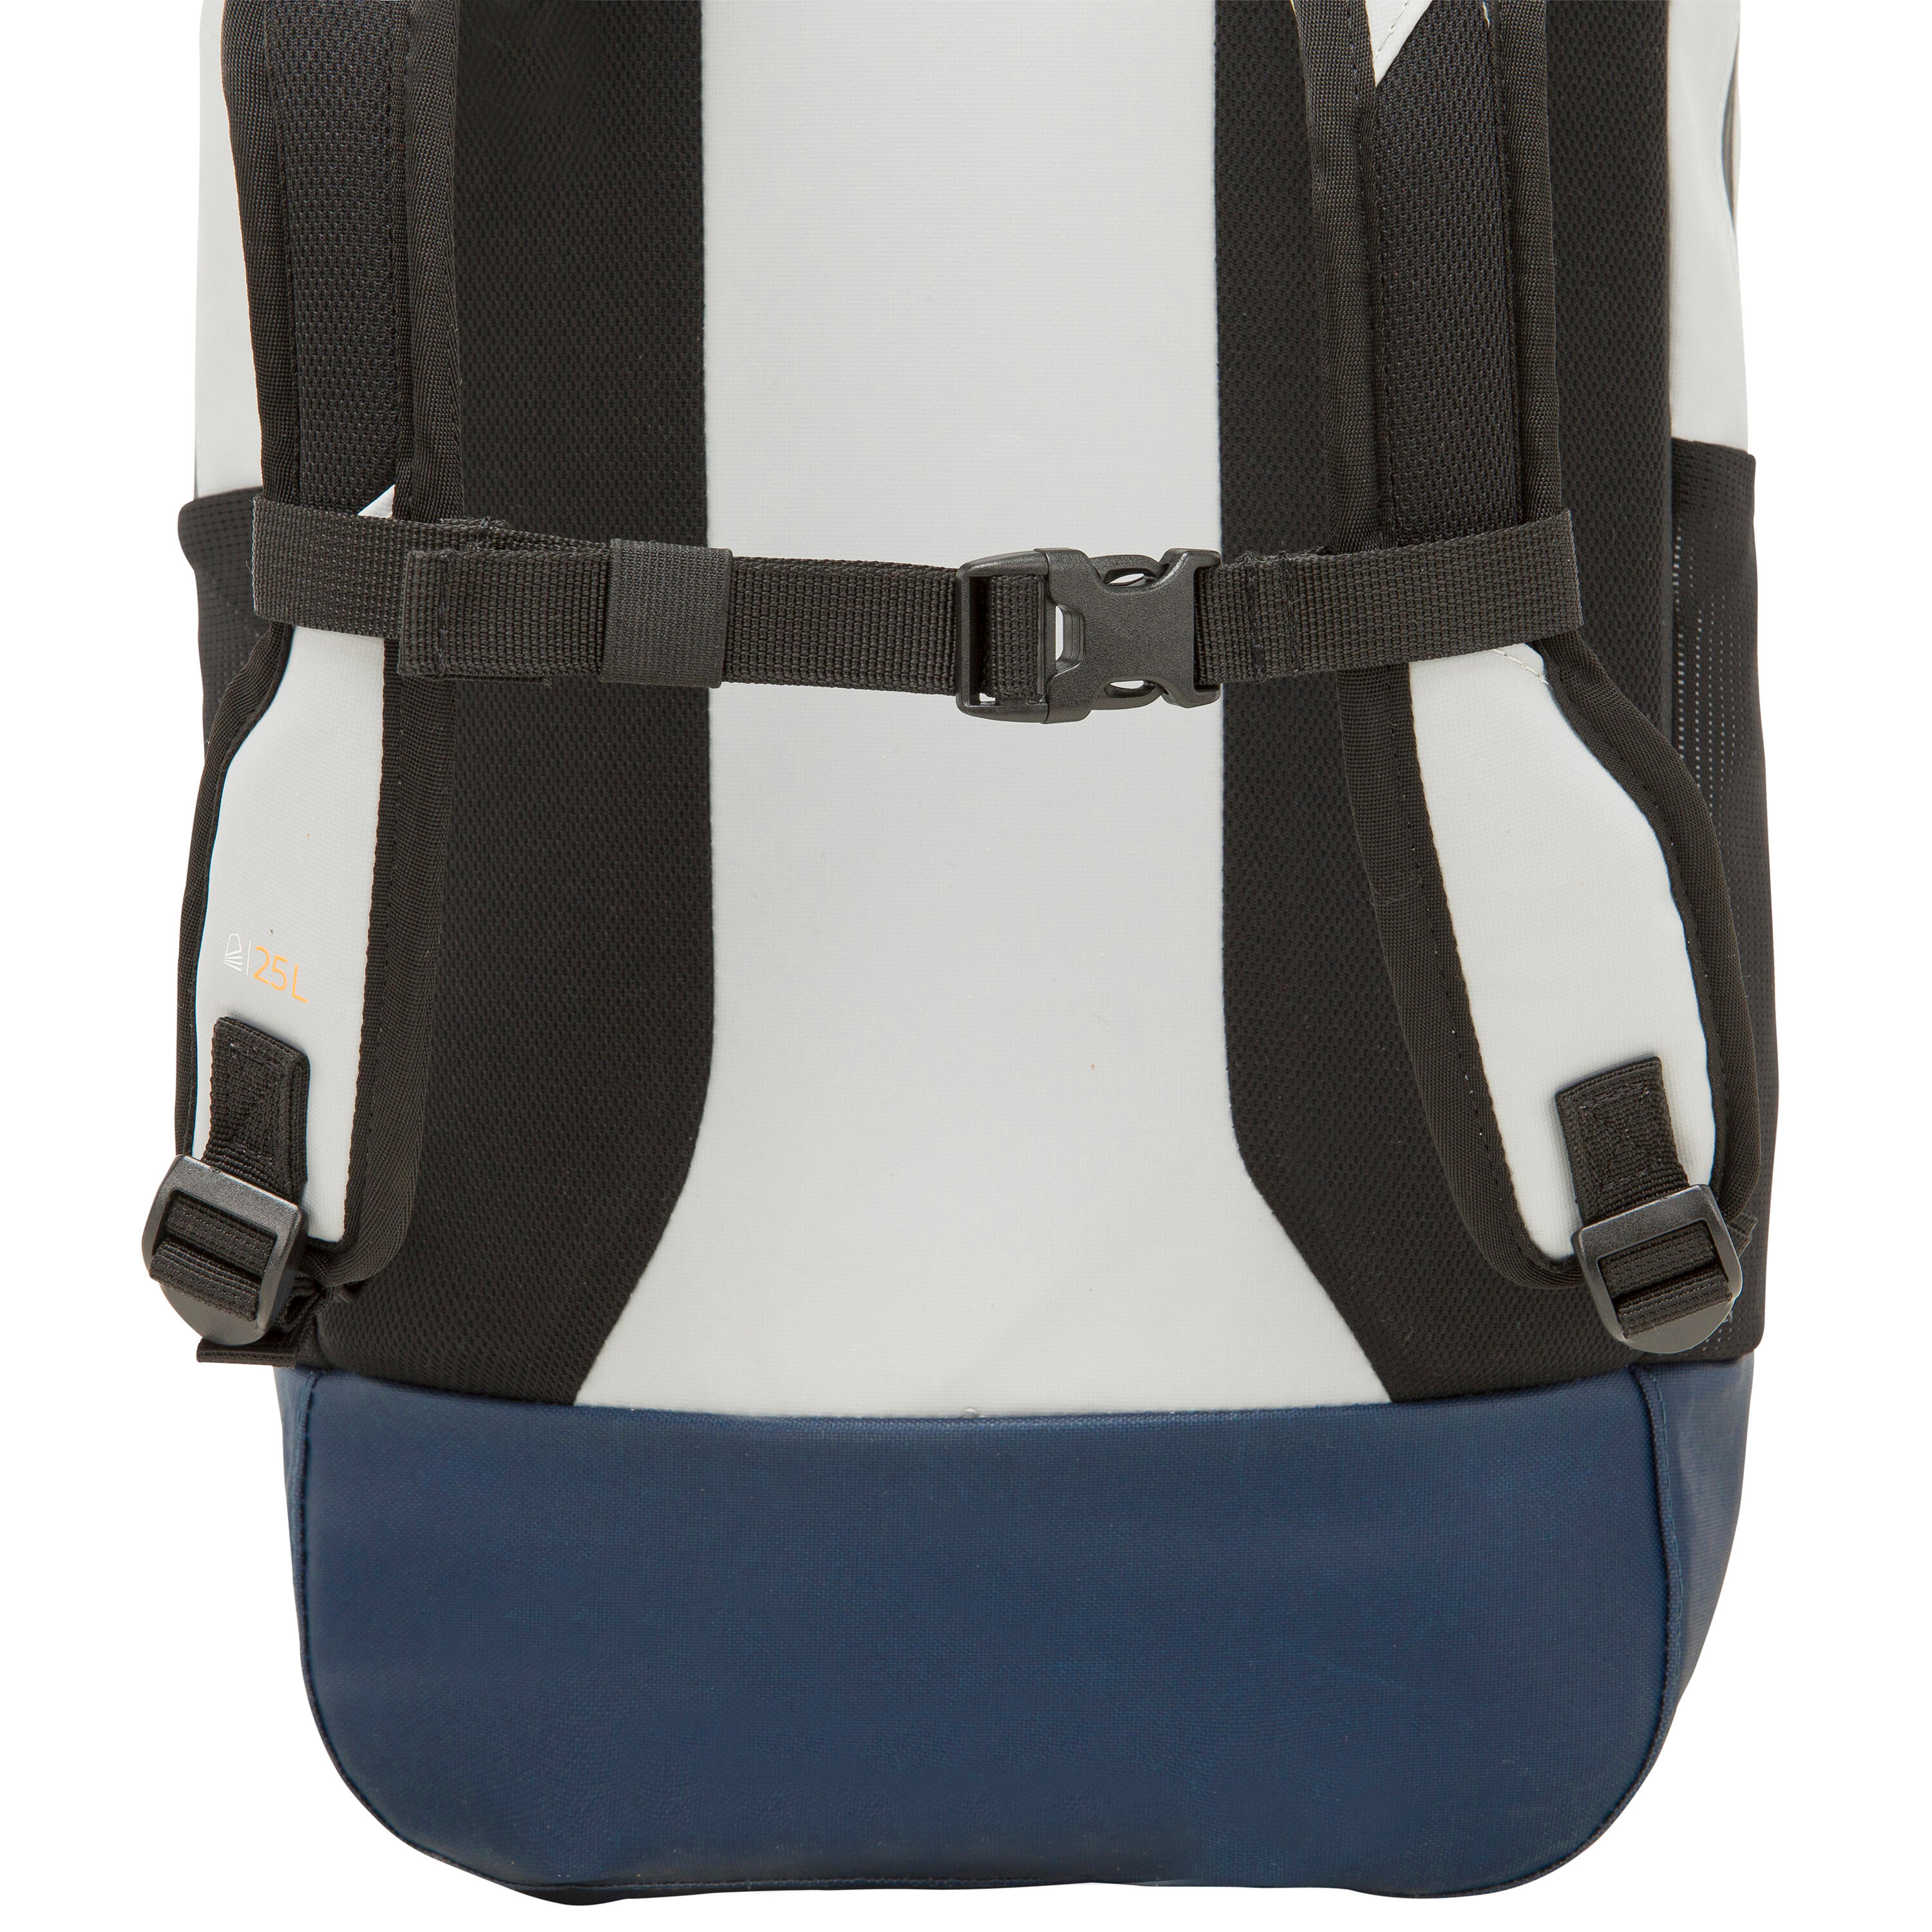 Waterproof backpack 25 L - Grey 6/11